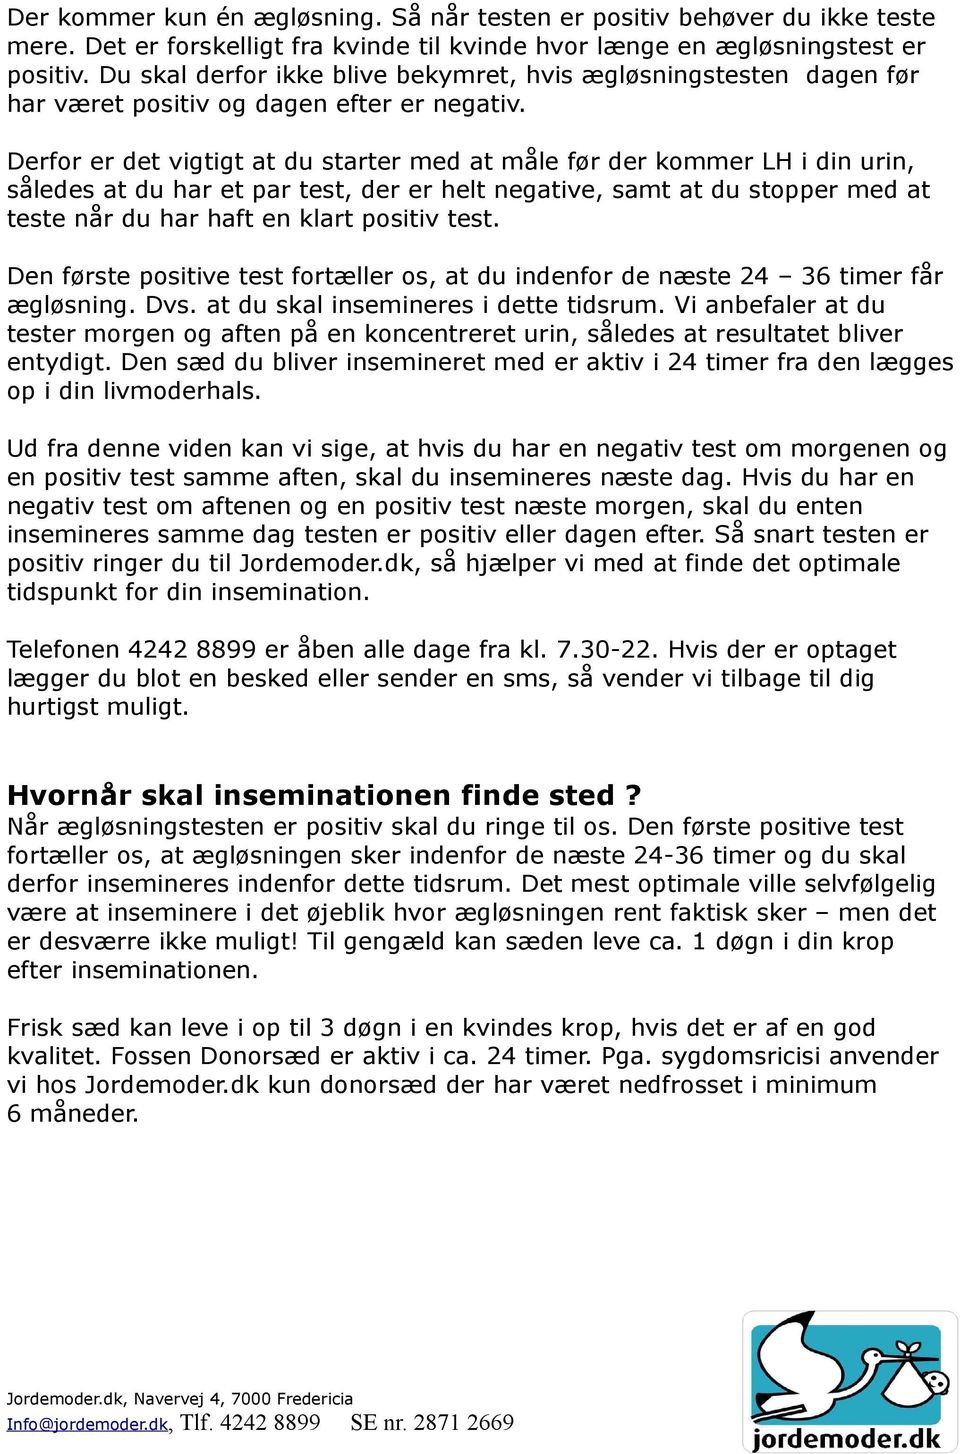 Velkommen hos Jordemoder.dk - PDF Free Download